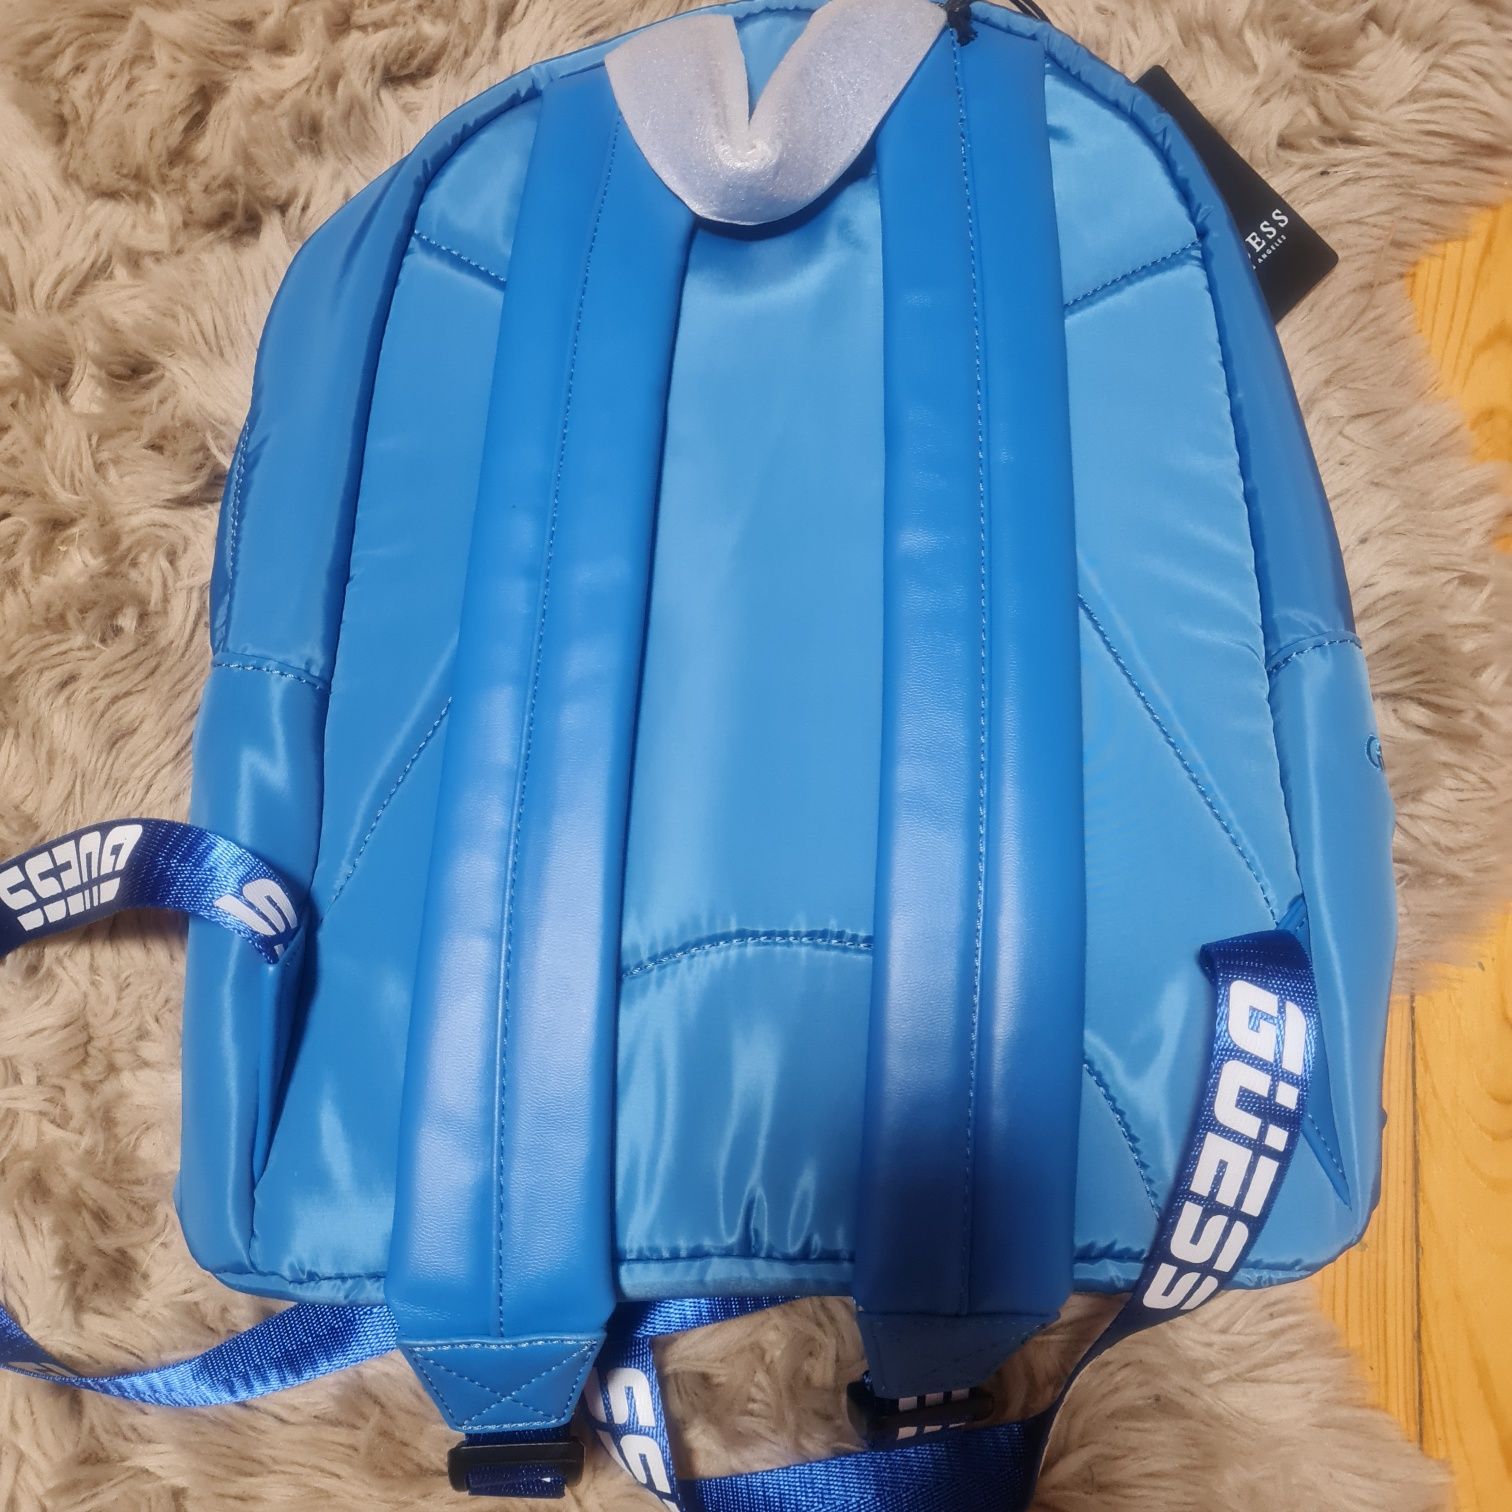 Guess plecak niebieski duży nowy z metką kupiony na zalando backpack